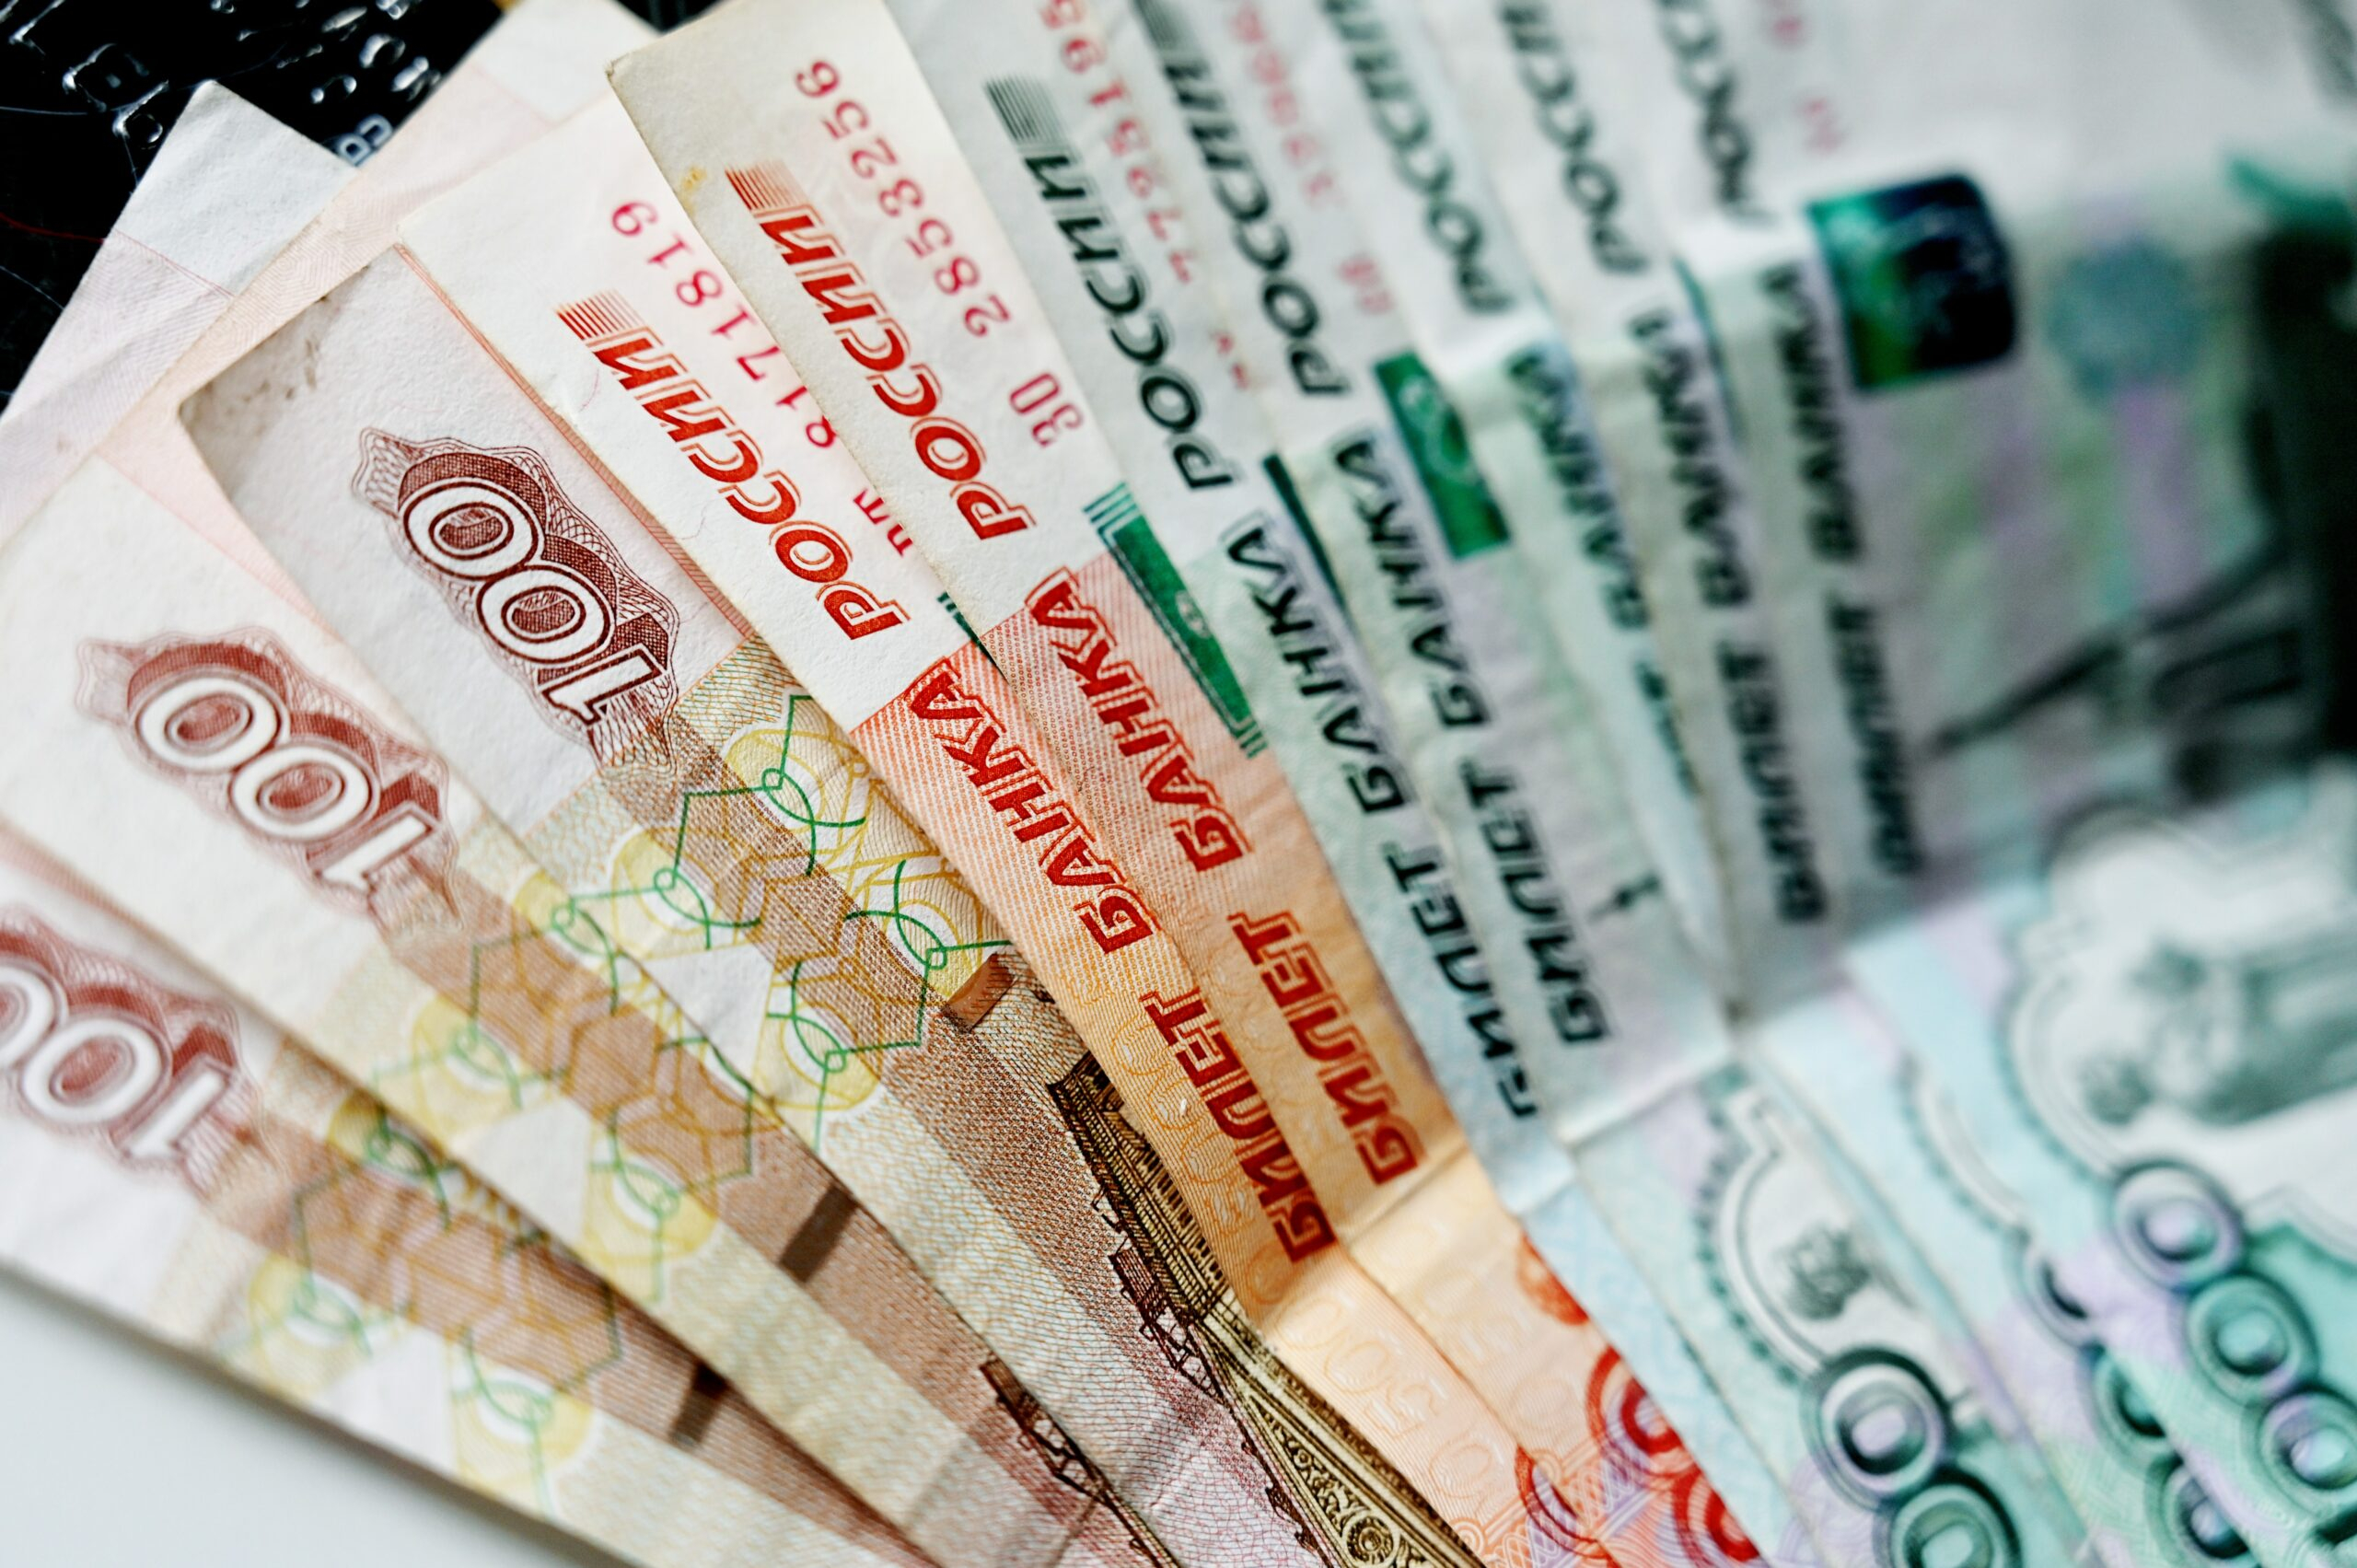 Агентство Moody’s заявило, что выплаты по евробондам в рублях можно считать дефолтом